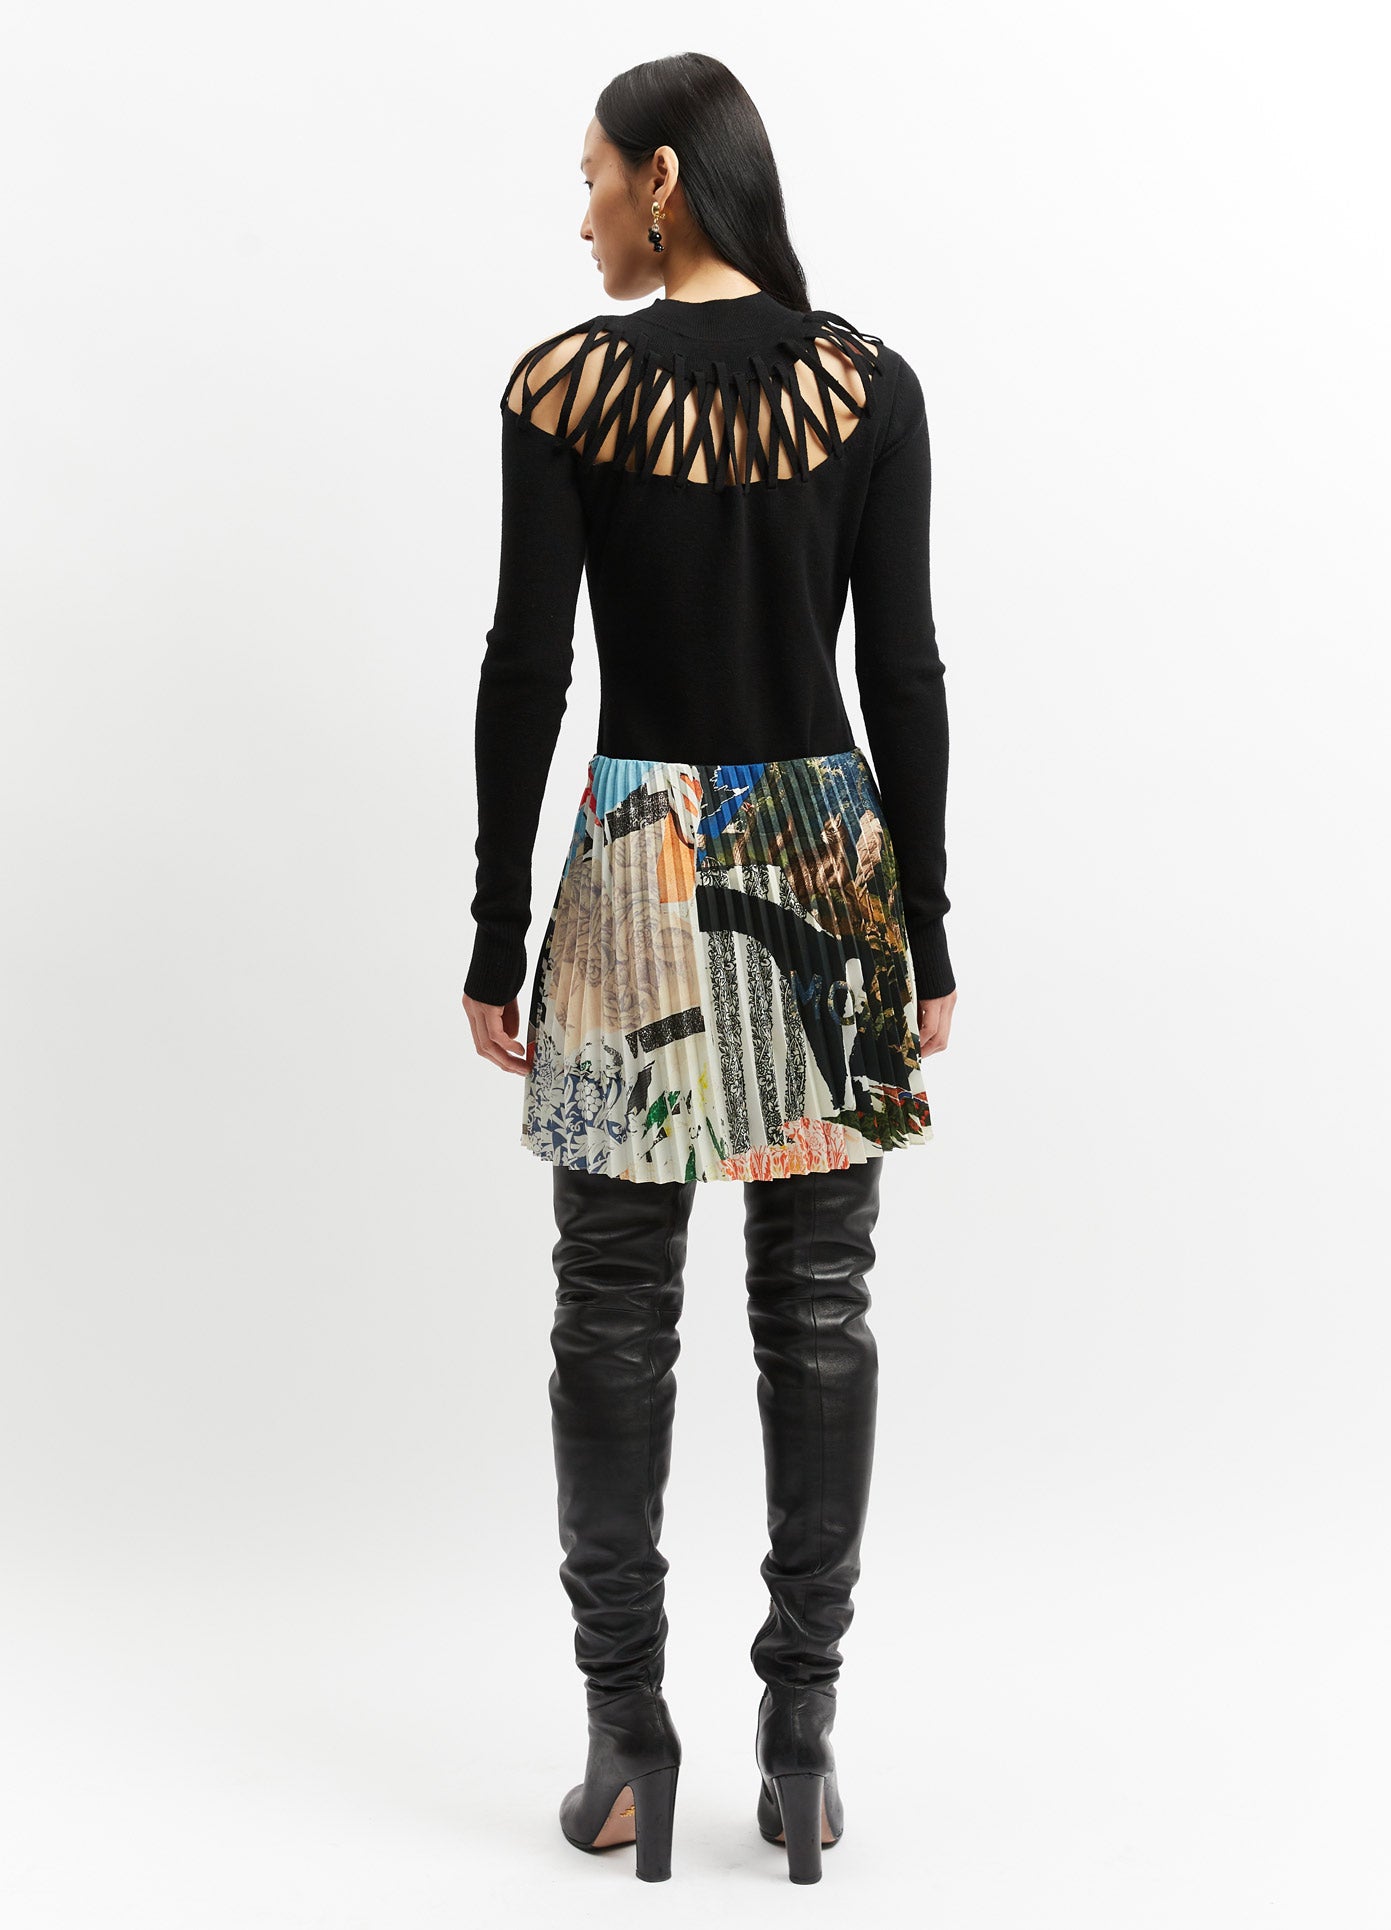 MONSE Printed Pleated Skirt in Black Multi on Model Full Back View